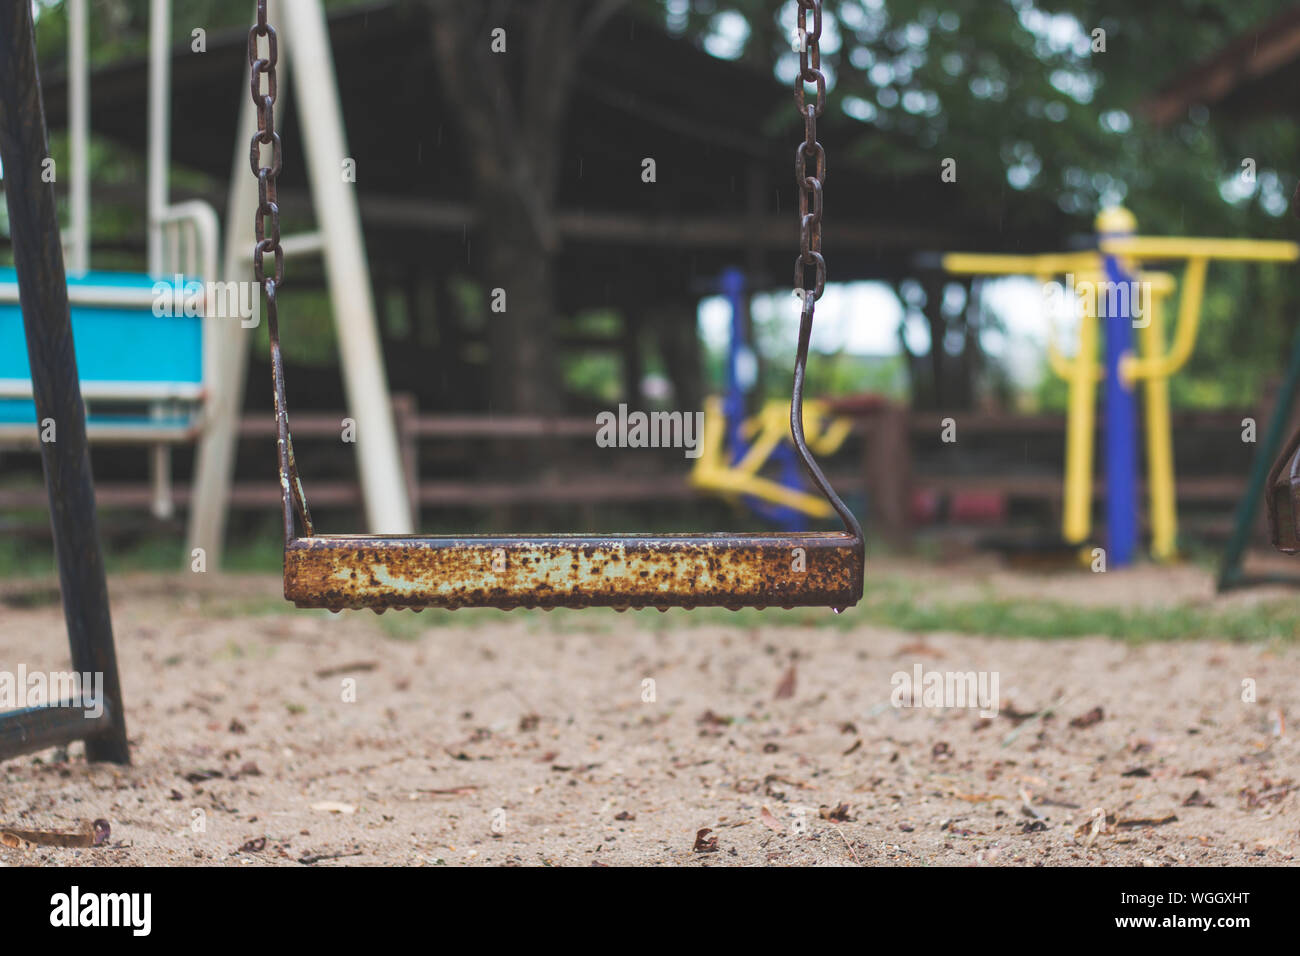 Wet Rusty Swing At Playground During Rainy Season Stock Photo